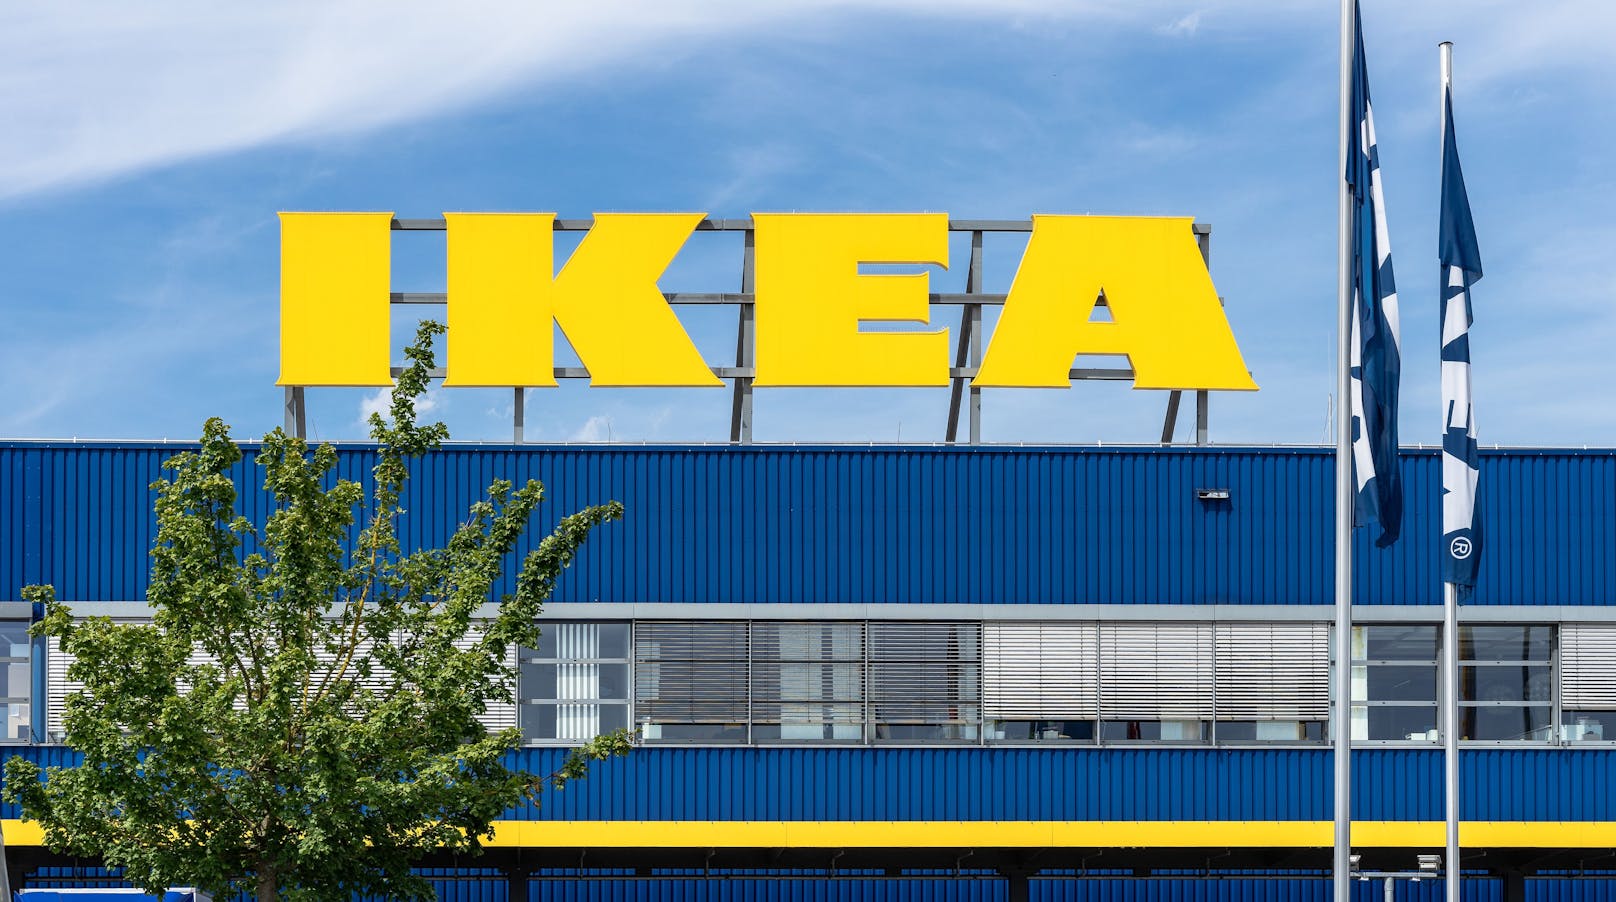 Das schwedische Möbelhaus Ikea streicht die beliebten Alkali-Batterien aus dem Sortiment.&nbsp;